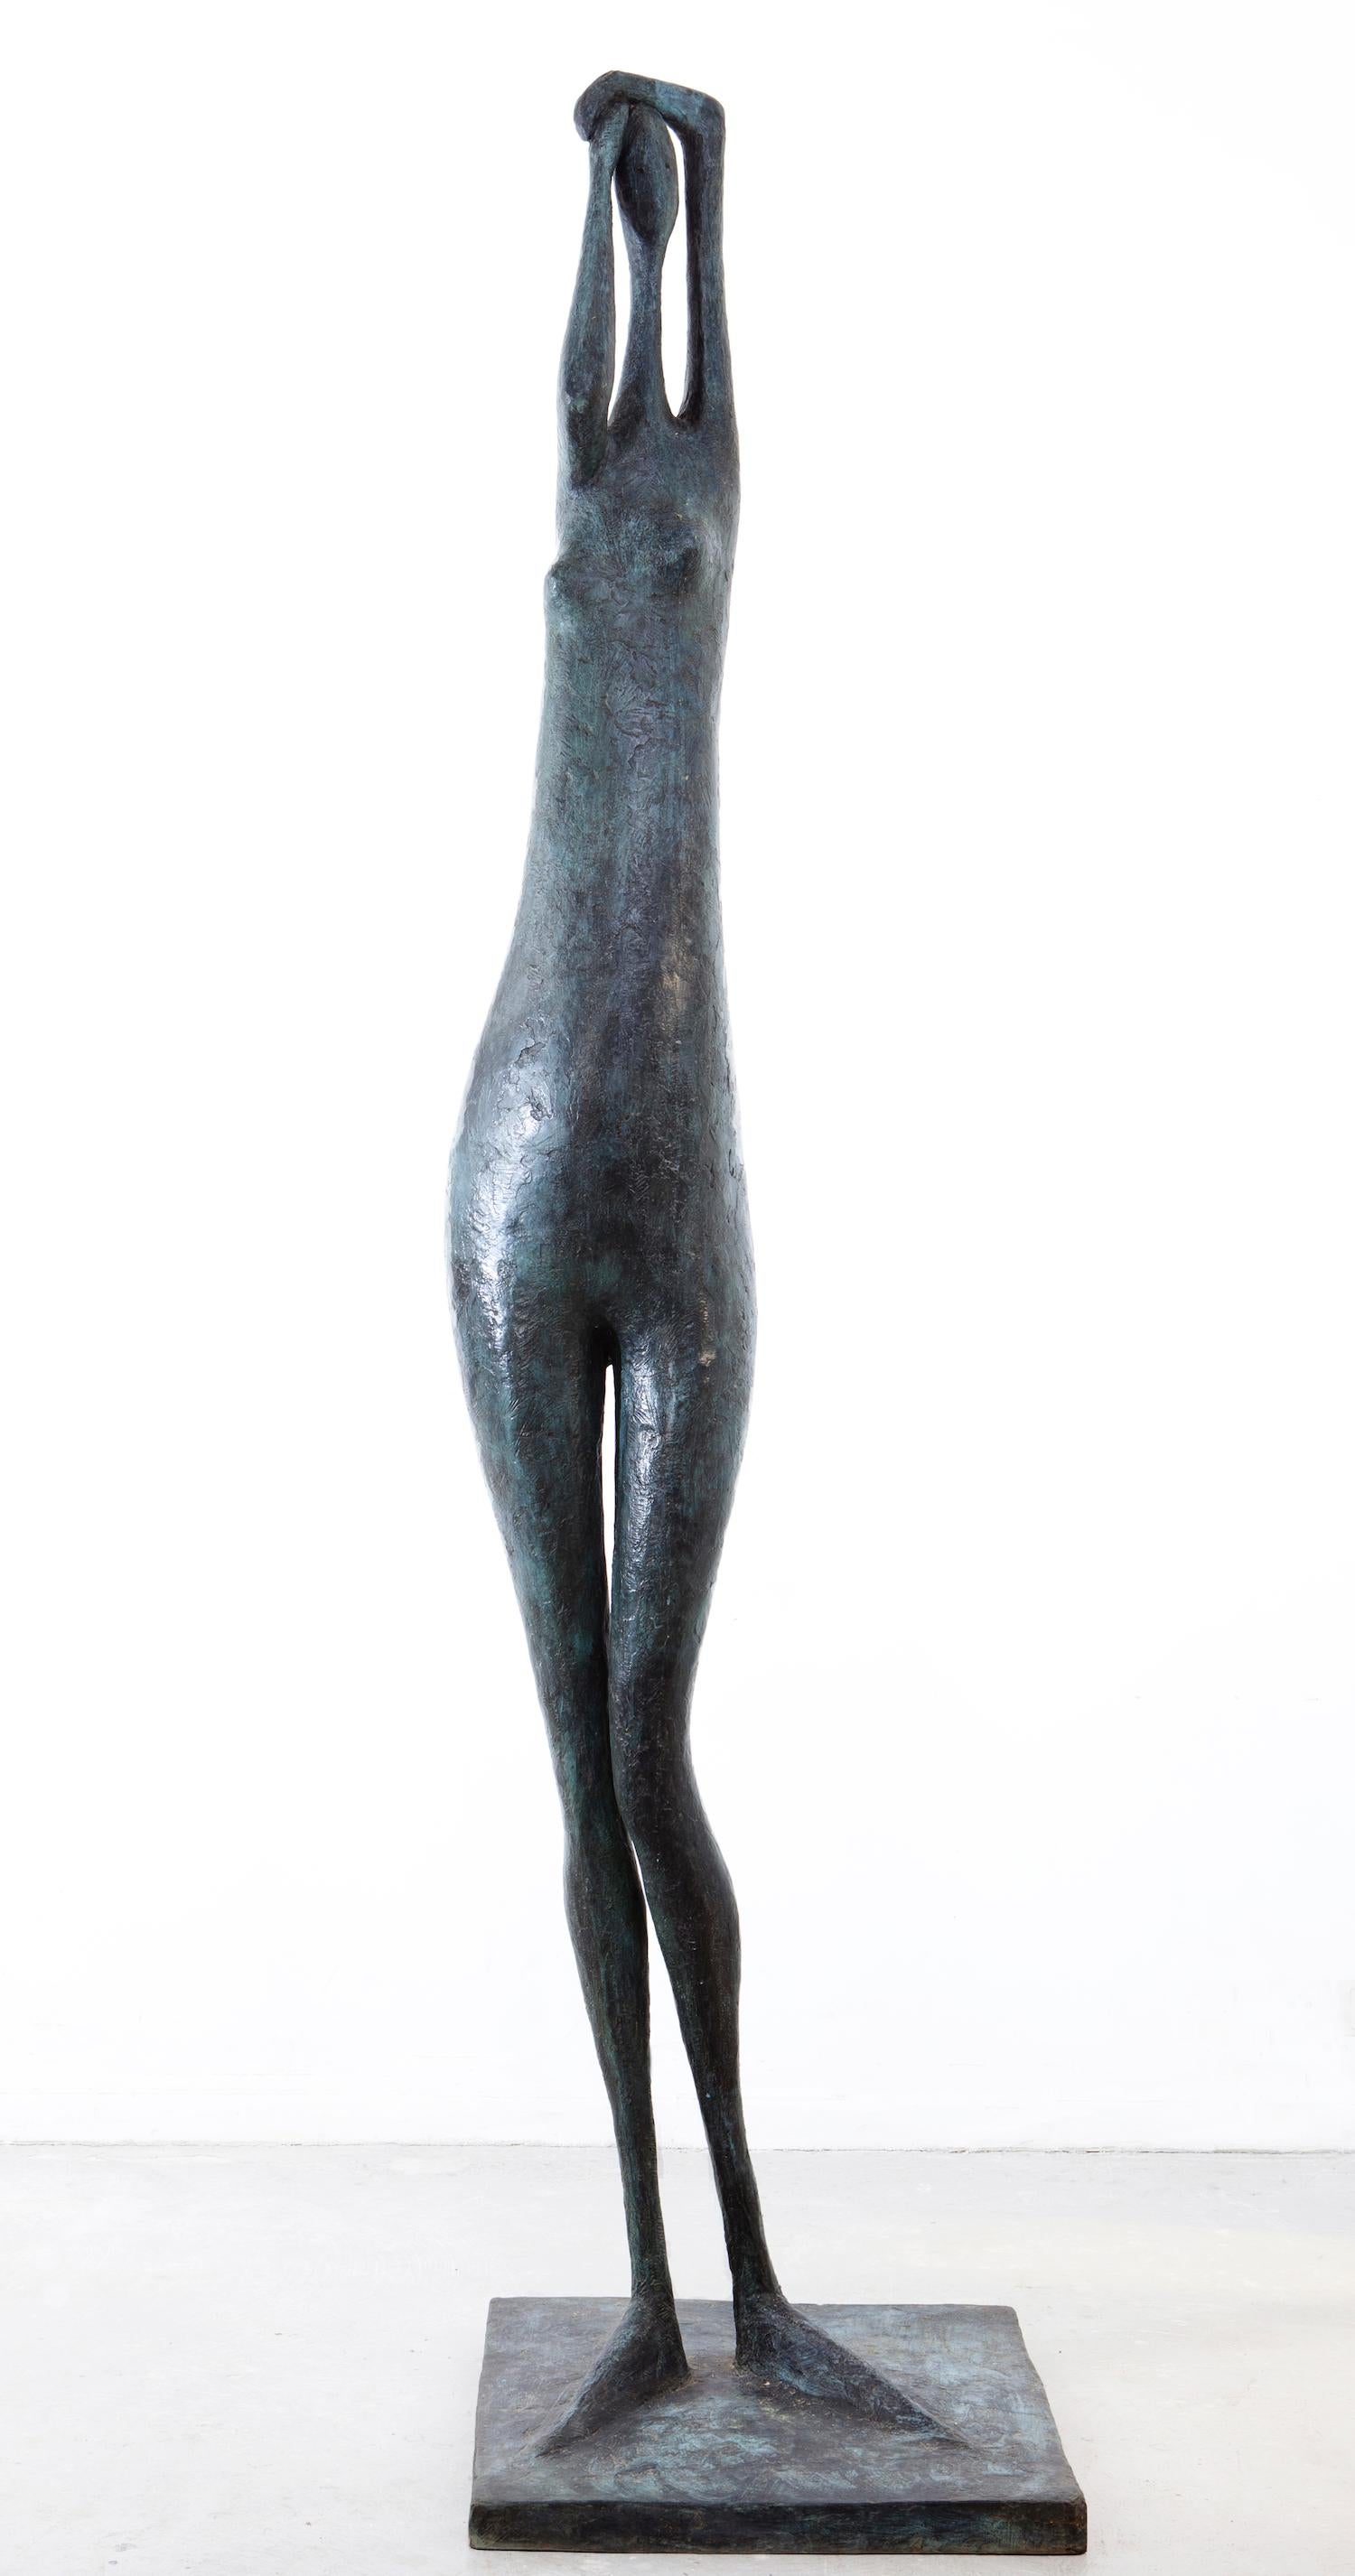 La figure monumentale I, bras levés, est une sculpture en bronze de l'artiste contemporain français Pierre Yermia, dont les dimensions sont les suivantes  250 × 60 × 60 cm (98.4 × 23.6 × 23.6 in). 
La sculpture est signée et numérotée, elle fait